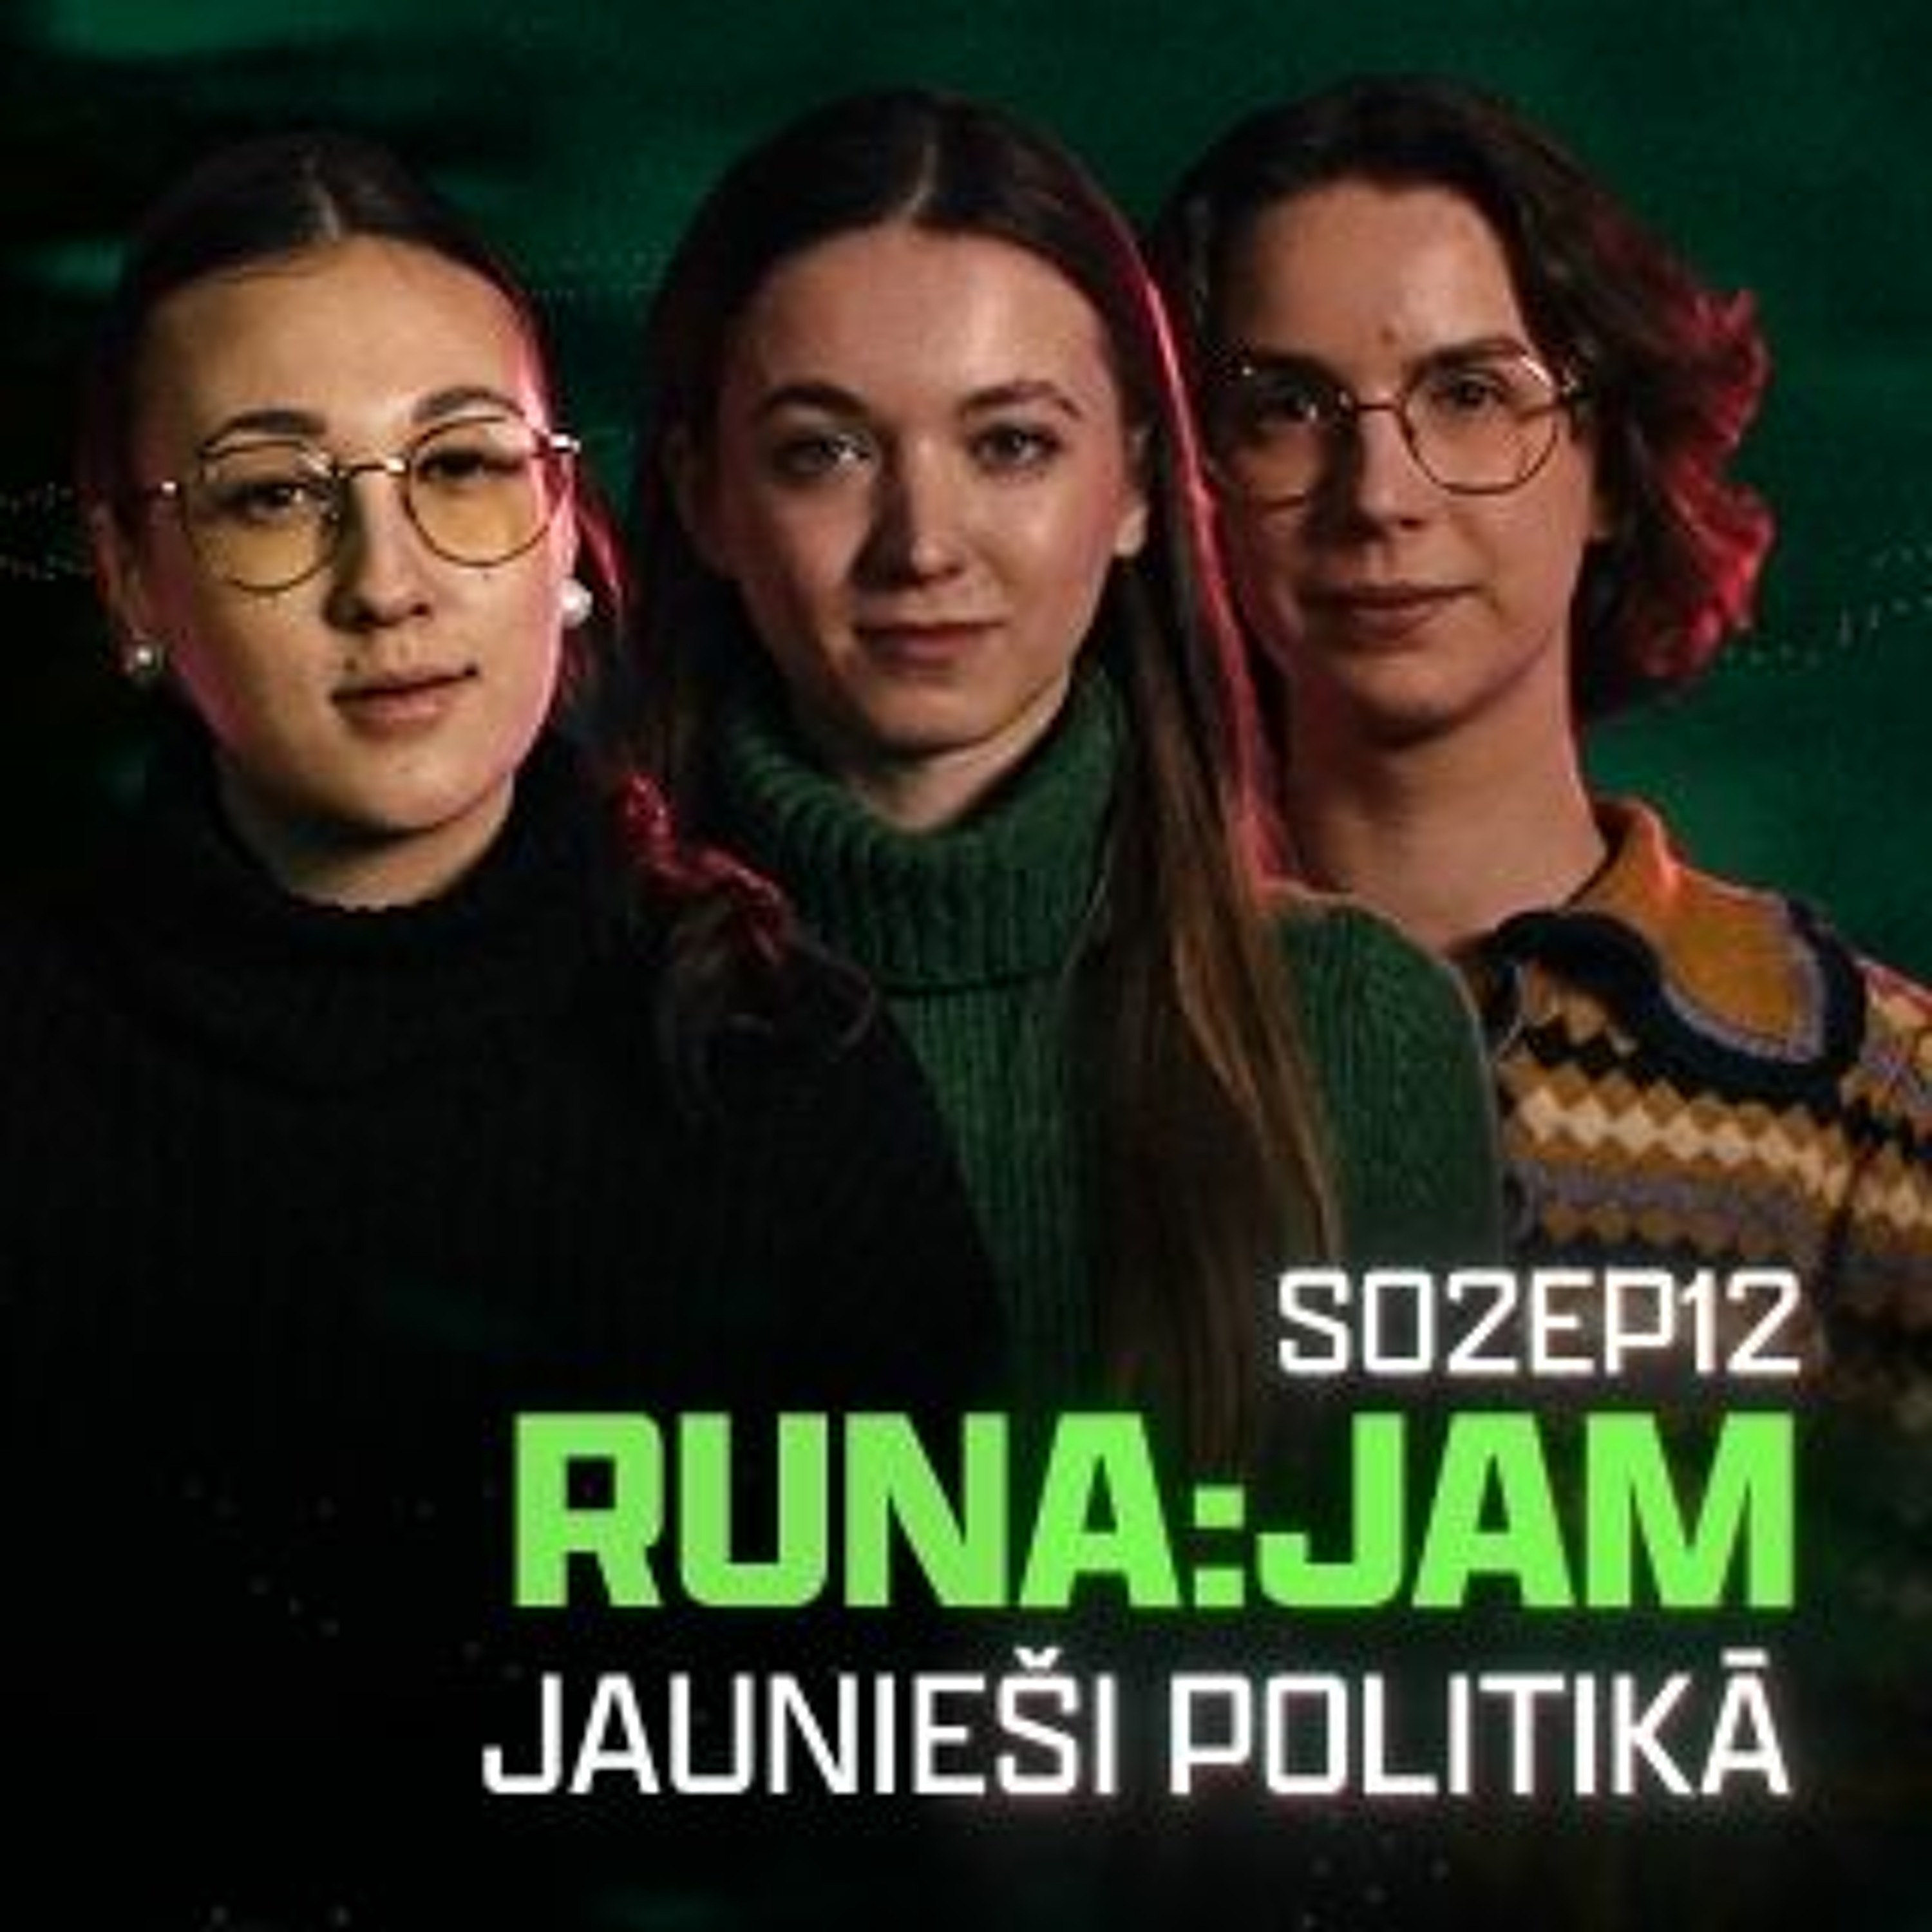 Jaunieši politikā I RUNA:JAM! S02EP12